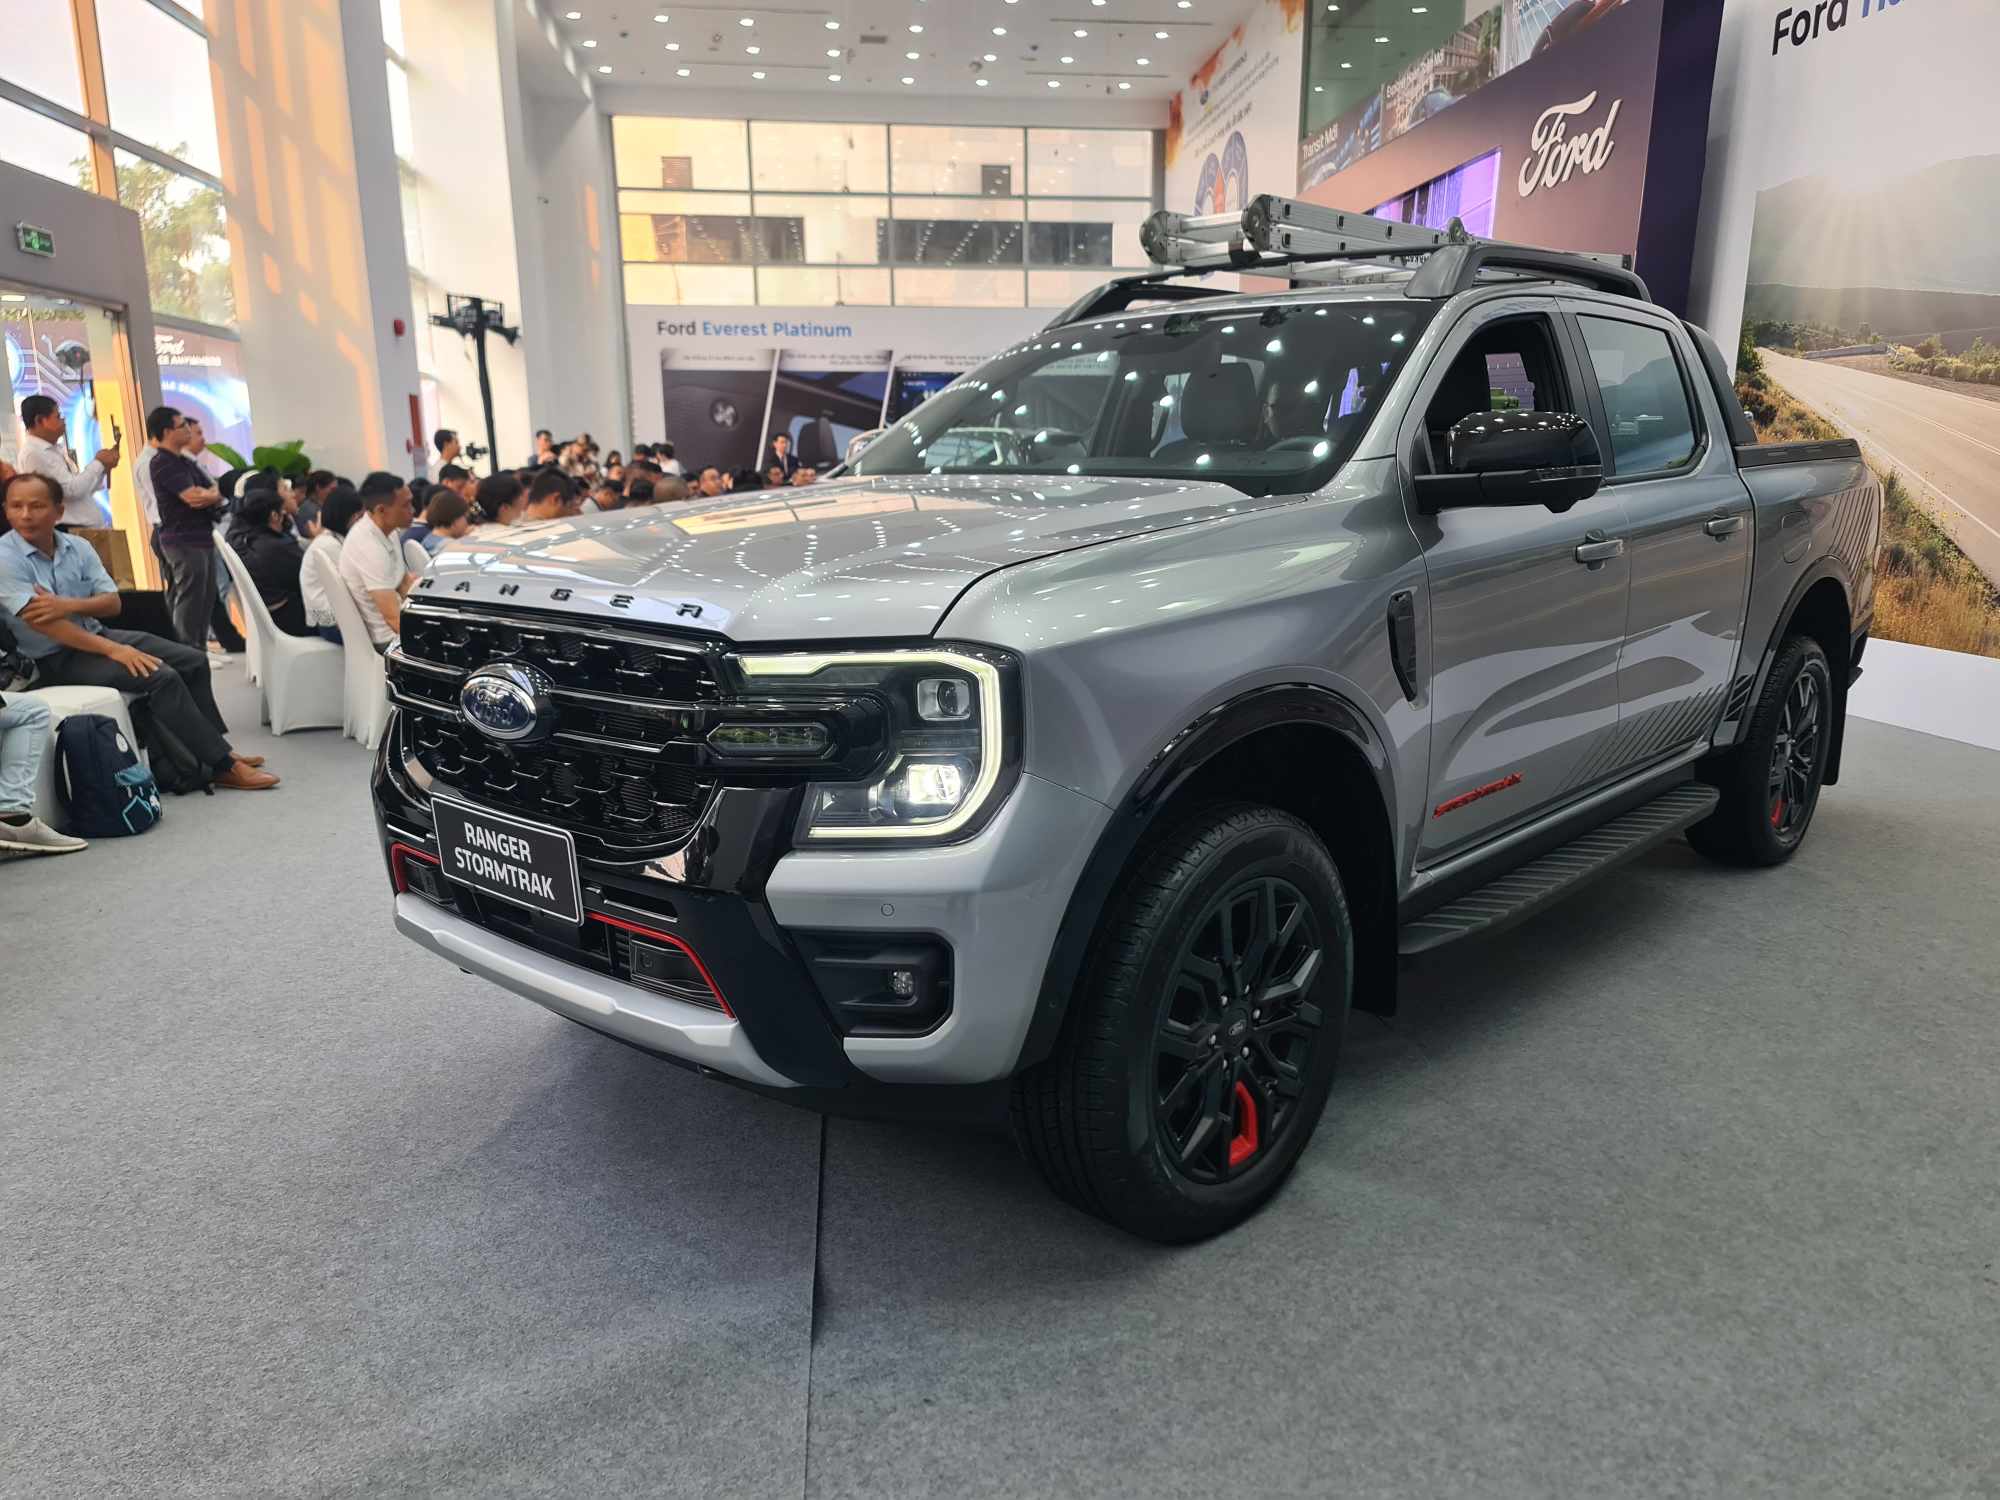 Ford Việt Nam chốt giá bộ đôi Ranger Stormtrak và Everest Platinum, giá cao nhất 1,545 tỷ đồng